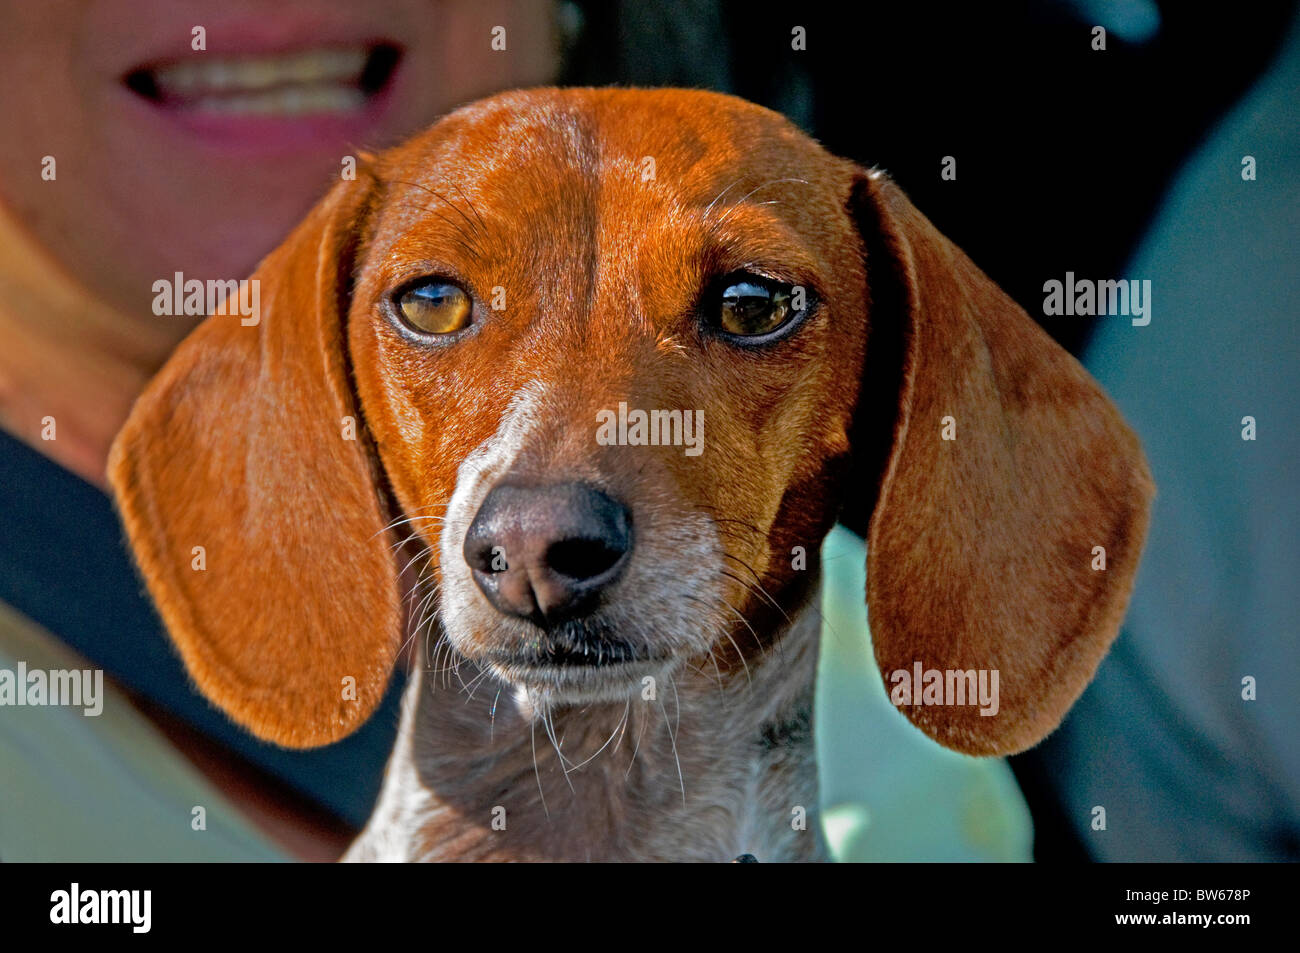 Face of dachshund dog Stock Photo